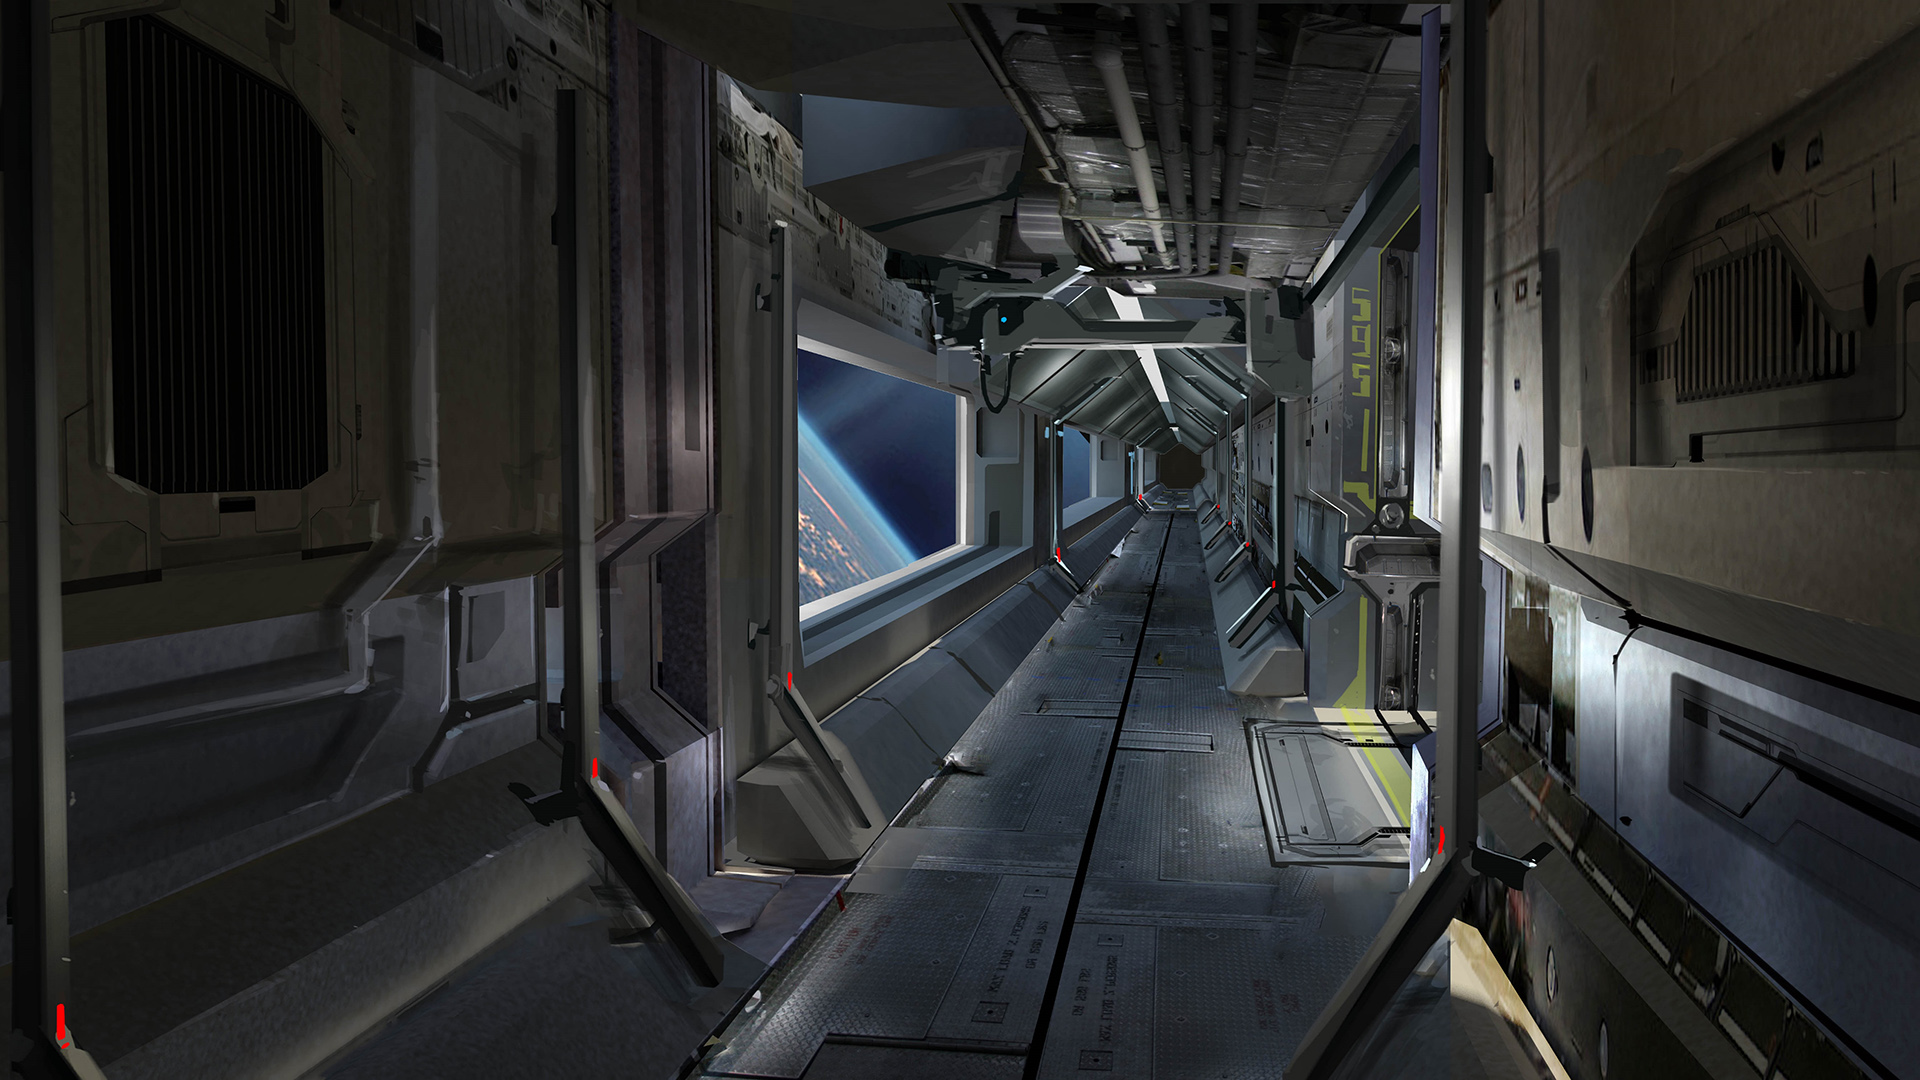 Corridor Spaceship Star Citizen Hd Wallpaper Games Wallpaper Images, Photos, Reviews